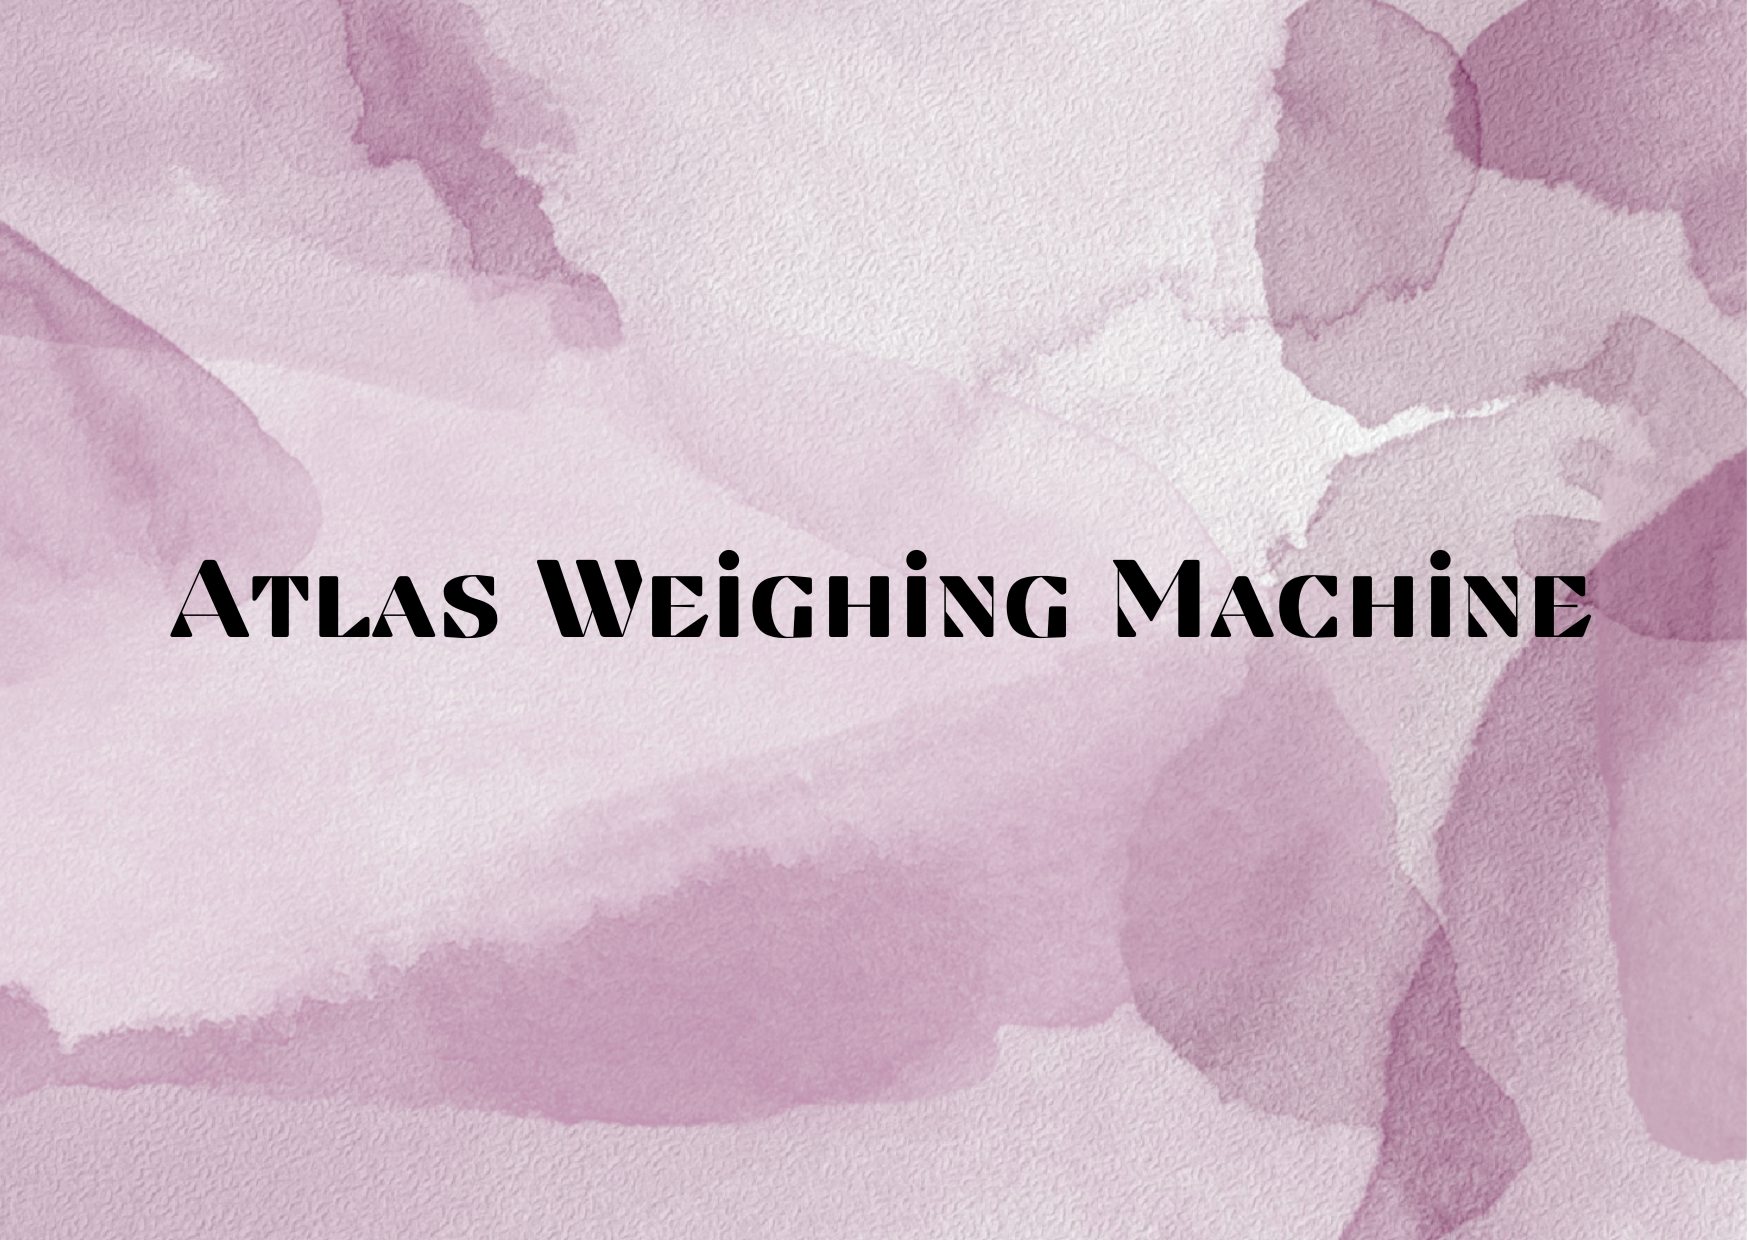 Atlas Weighing Machine,   